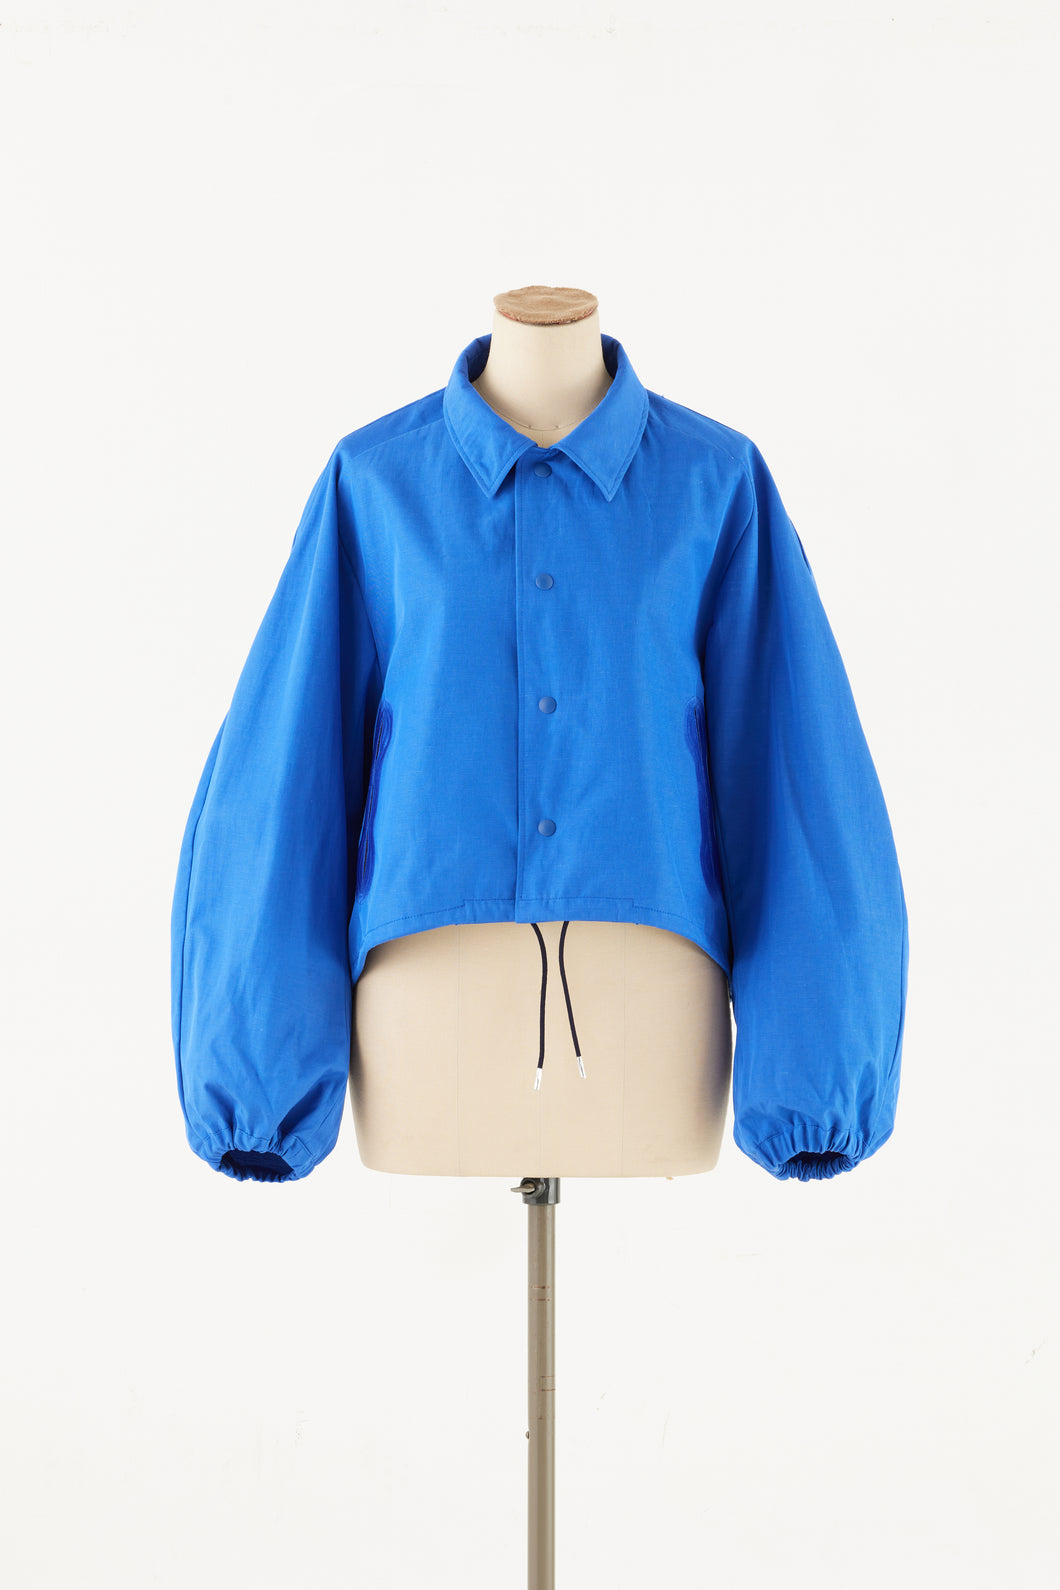 Linen Blue Short Coach Jacket